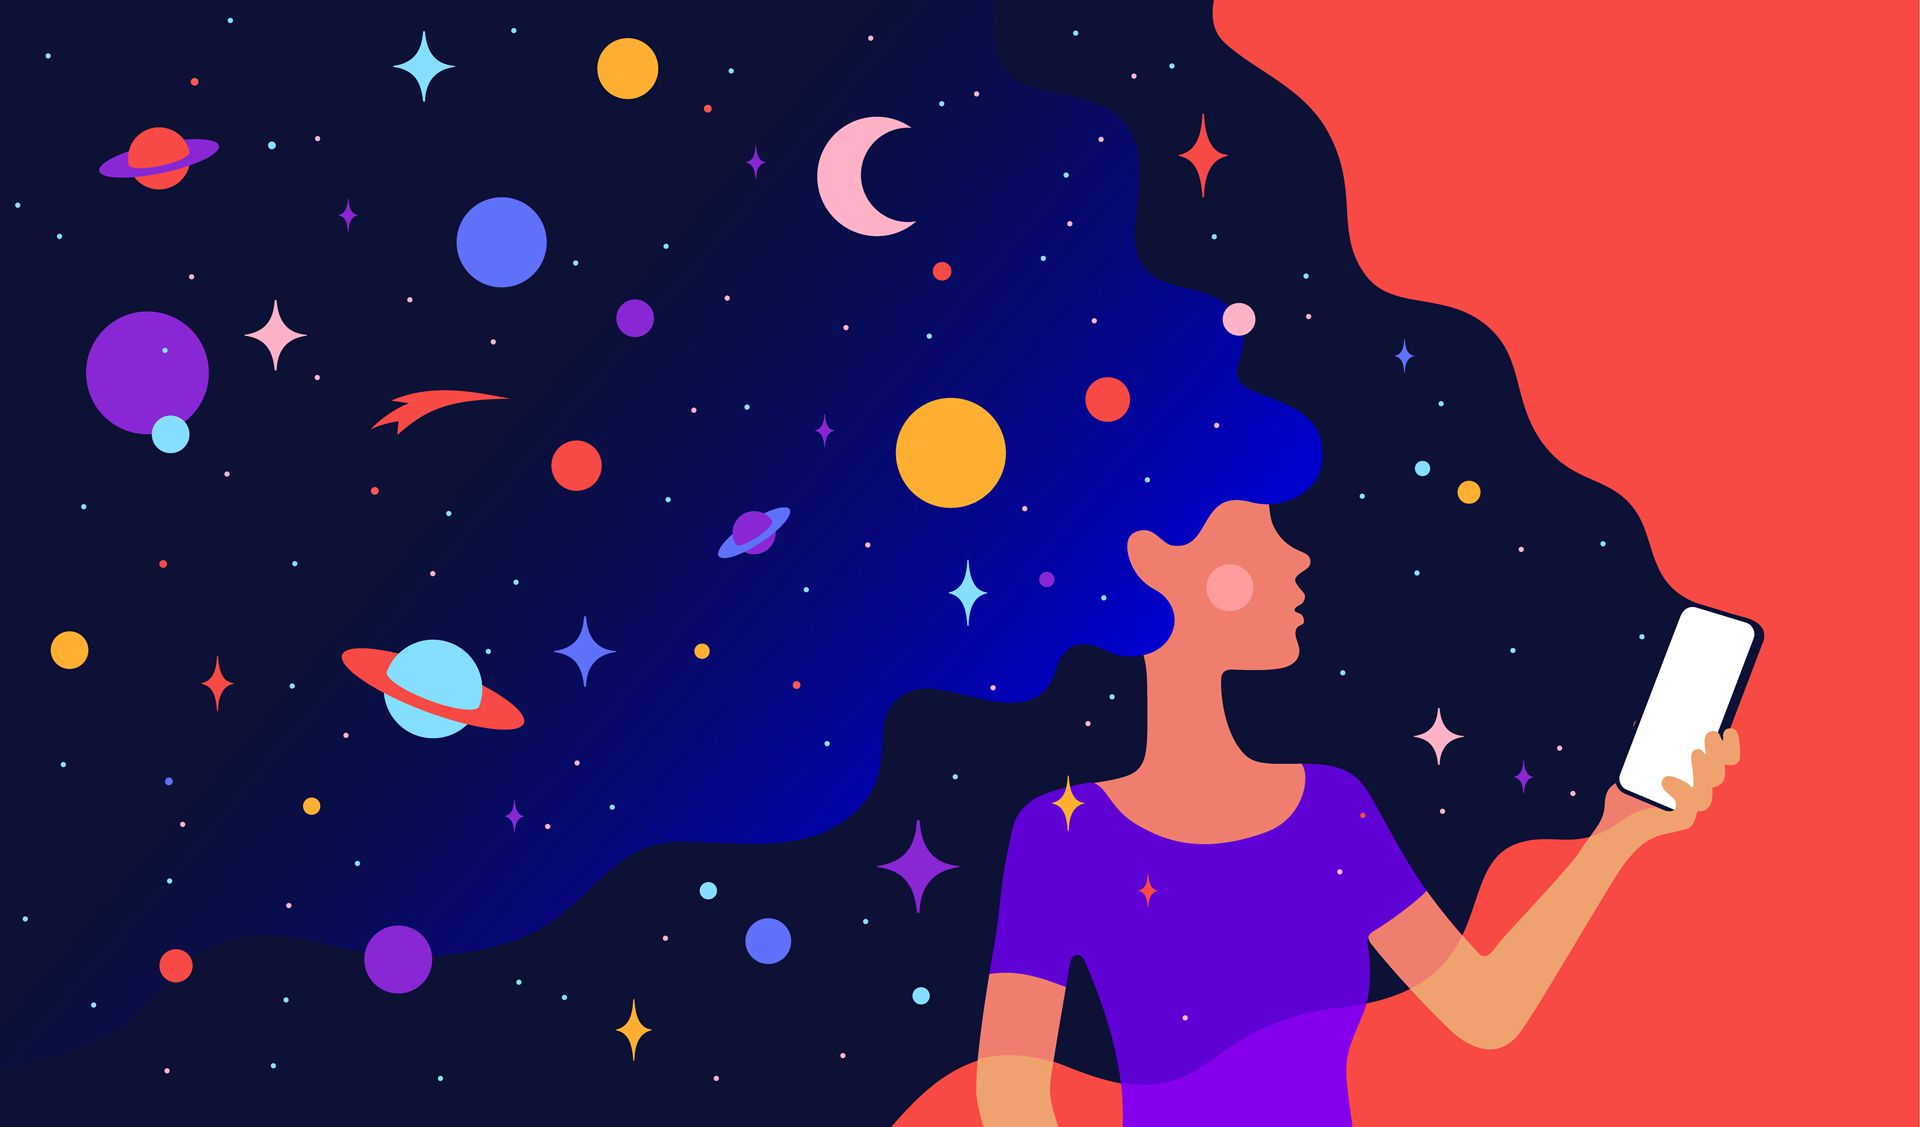 Kresba ženy držící svůj smartphone s více barvami a kresby planetárních objektů z ní vycházející.